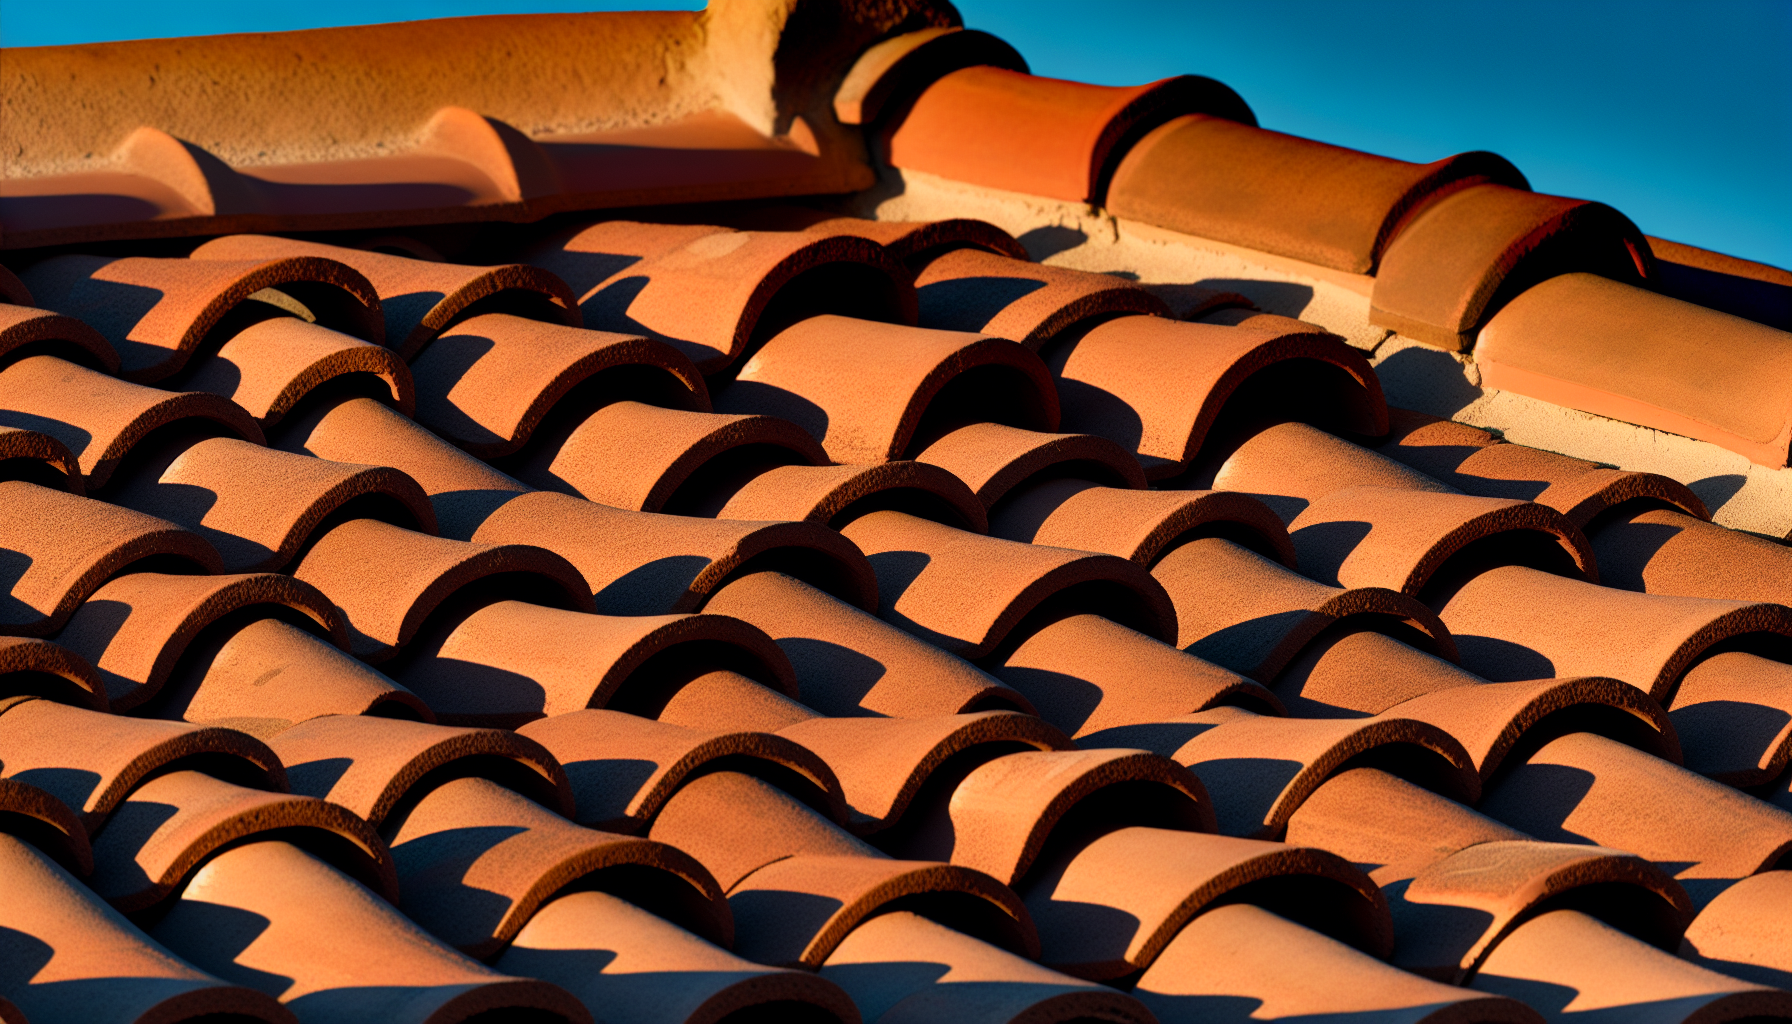 Spanish roof tiles in Arizona